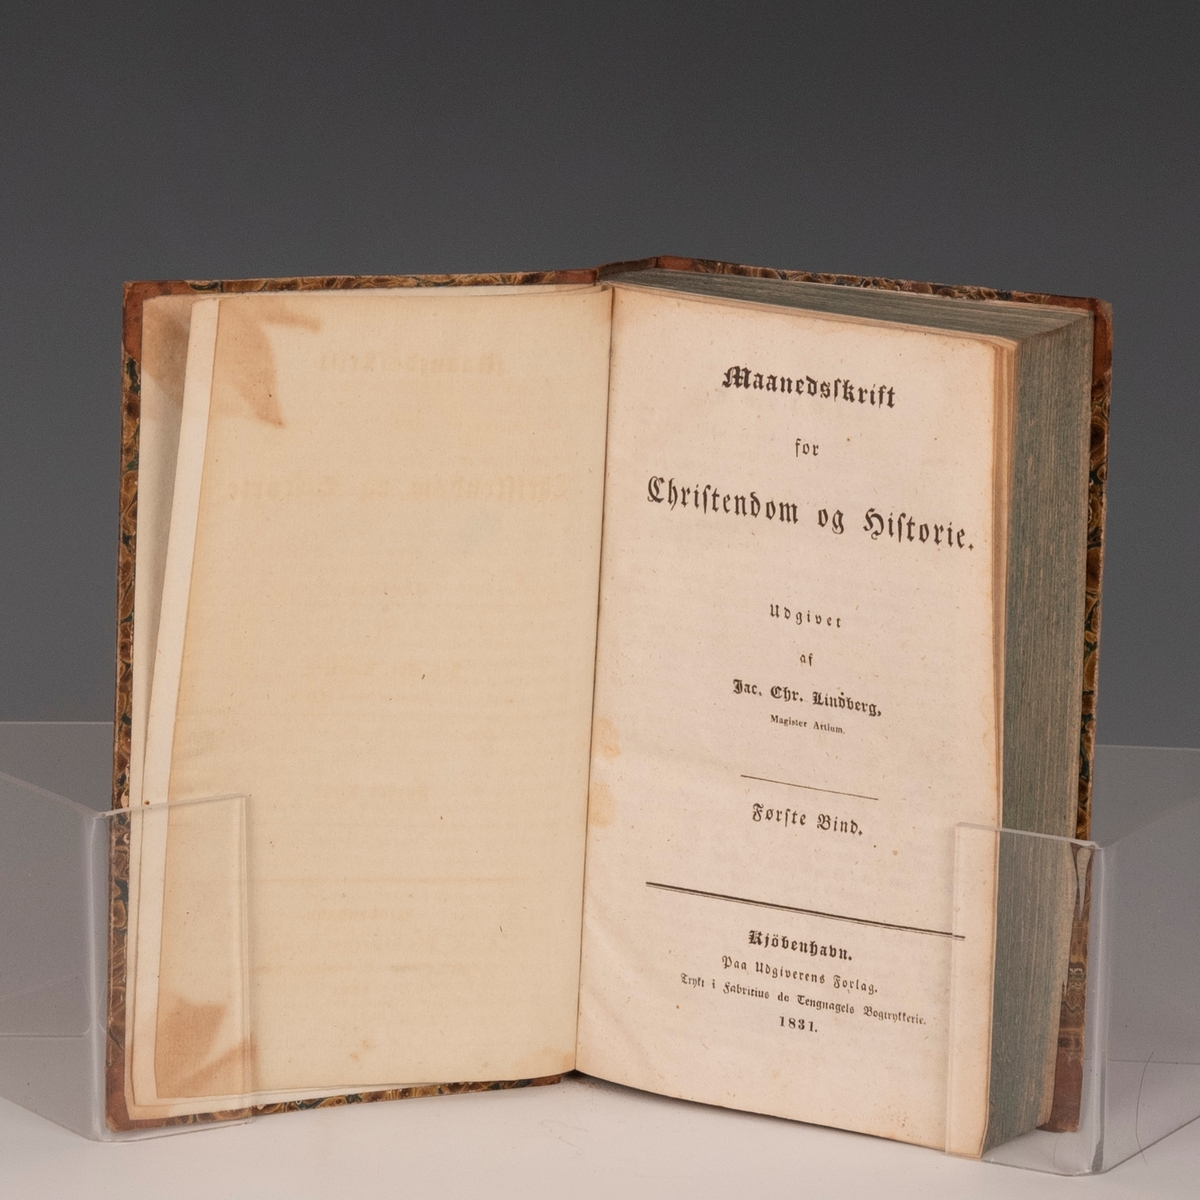 Maanedskrift for Christendom og Historie. Udg. av Jack. Chr. Lindberg. I-II. Kbhv 1831-32.
Bind I.